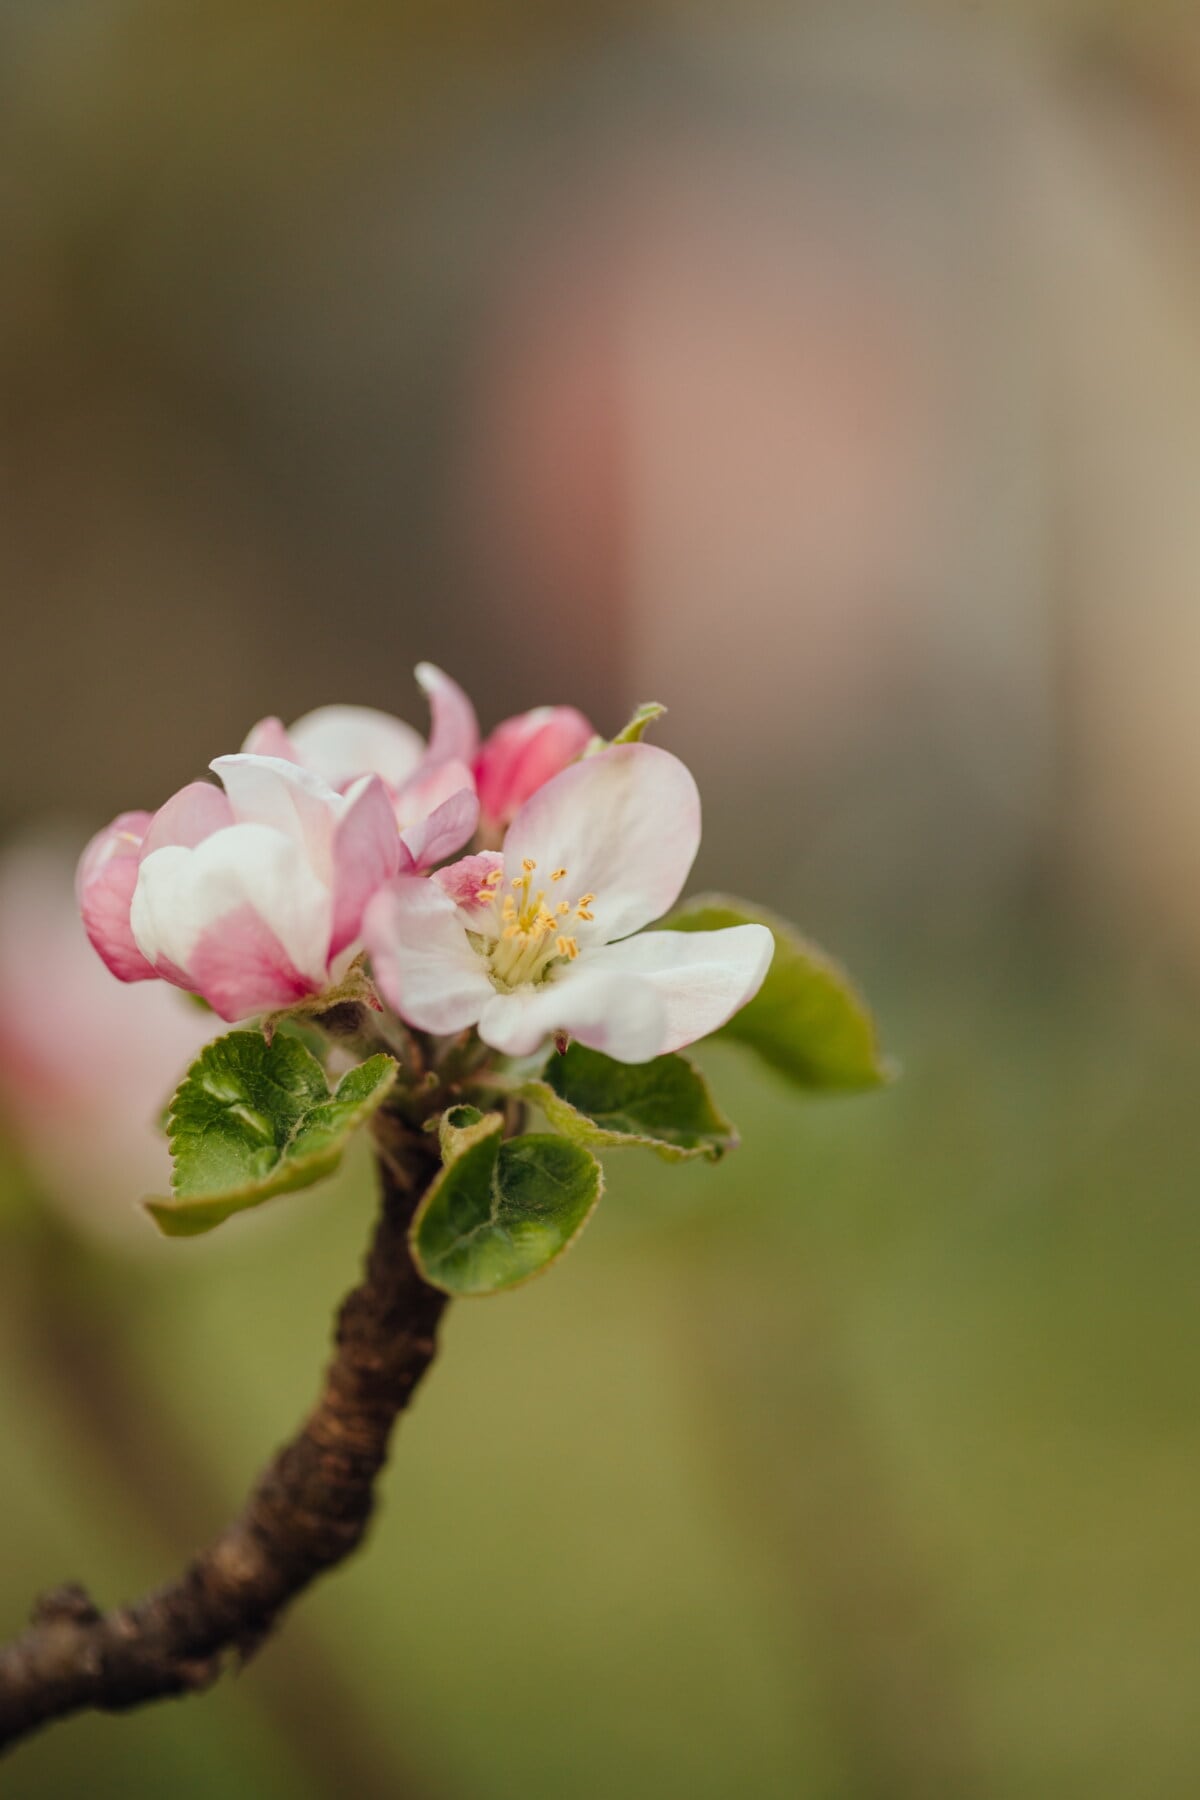 äppelträd, pollen, vit blomma, våren, posas, pistill, kronblad, oskärpa, Äpple, blomma